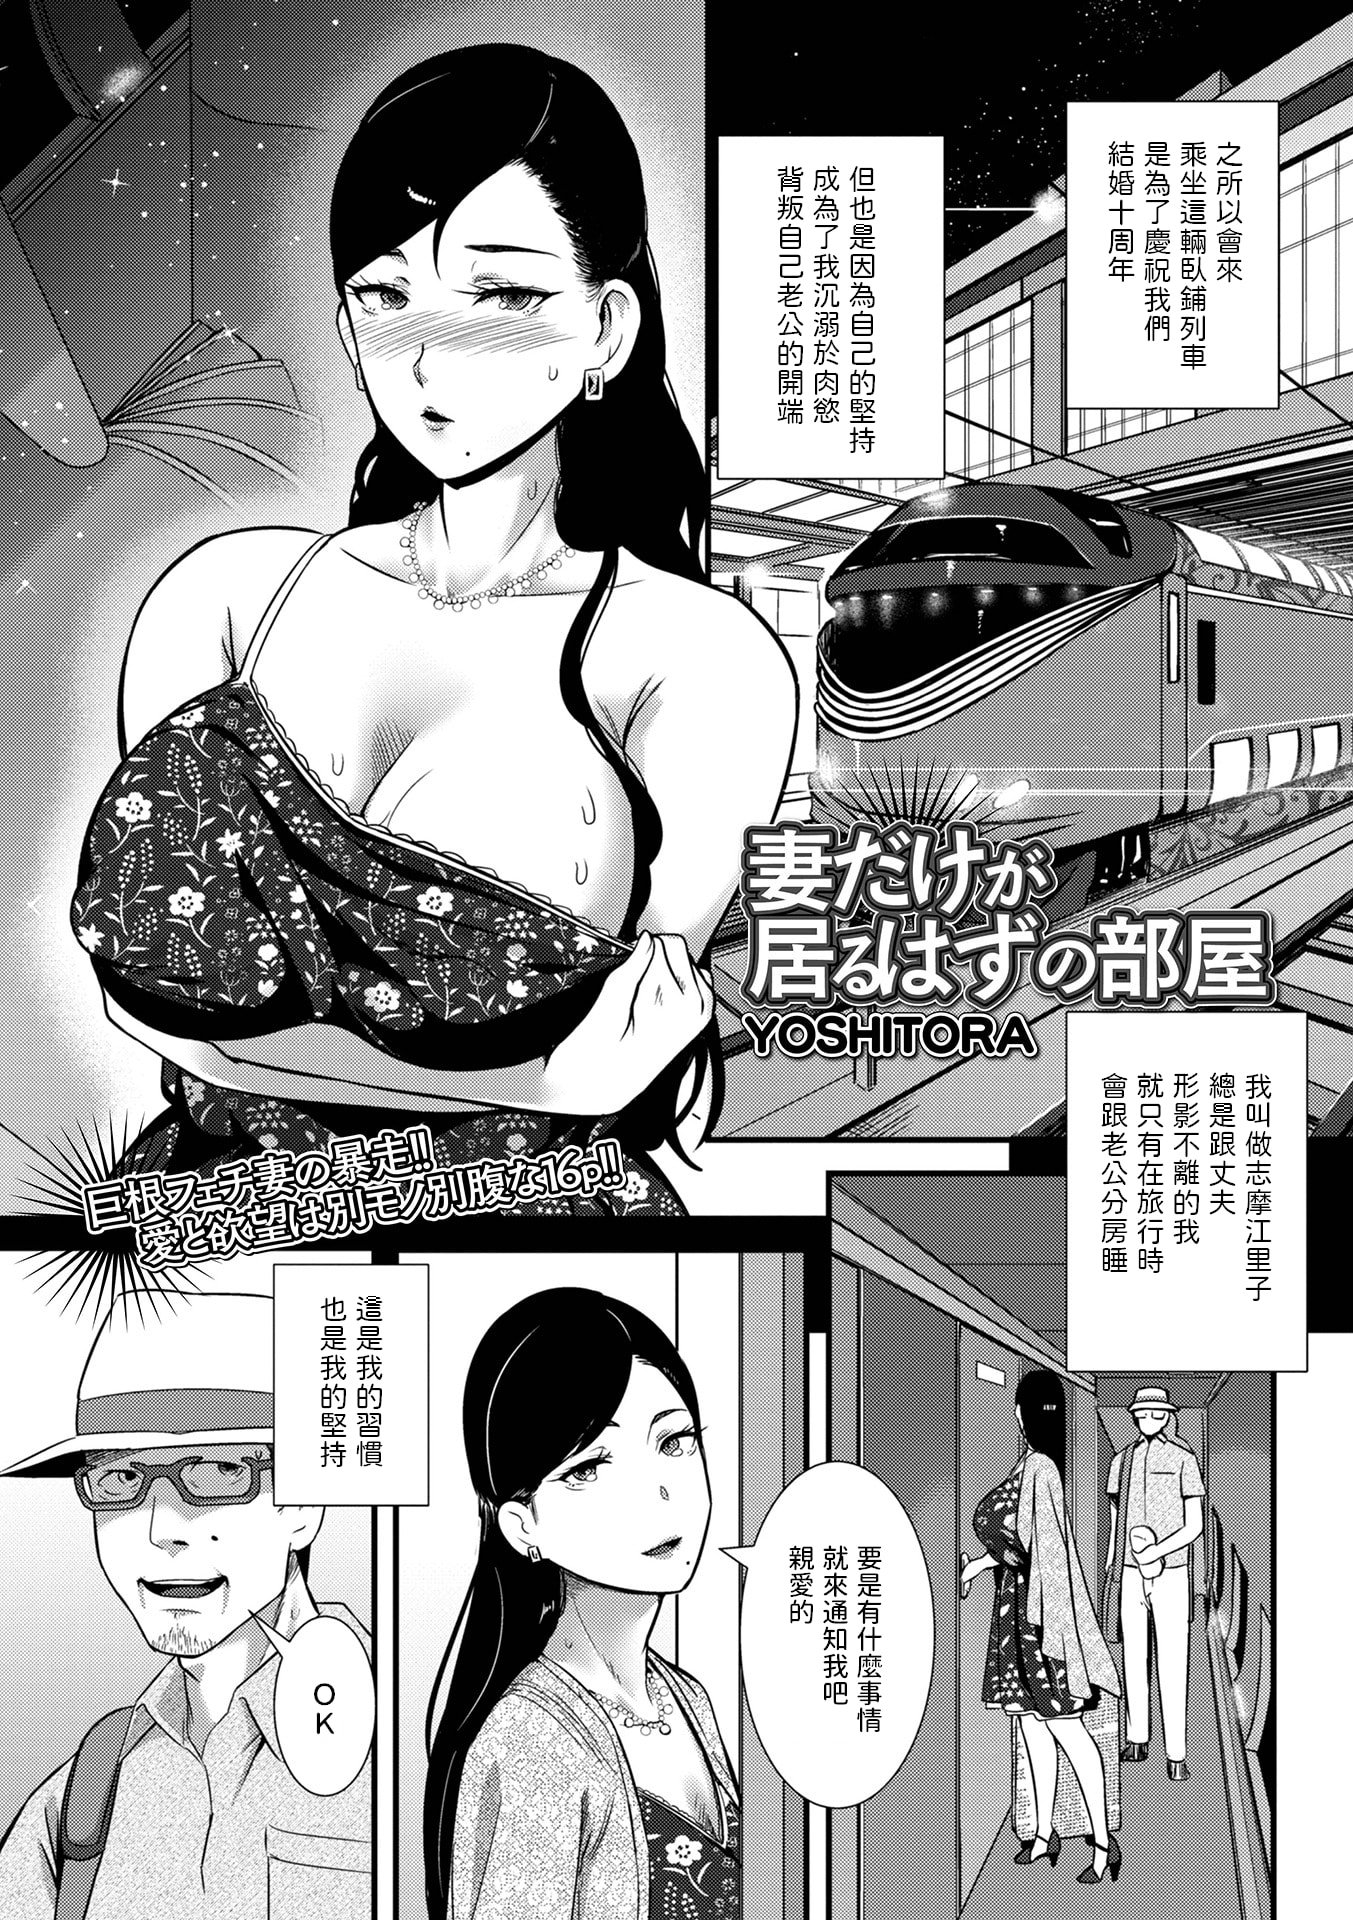 [YOSHITORA]  妻だけが居るはずの部屋  (コミック刺激的 SQUIRT！！ Vol.31)